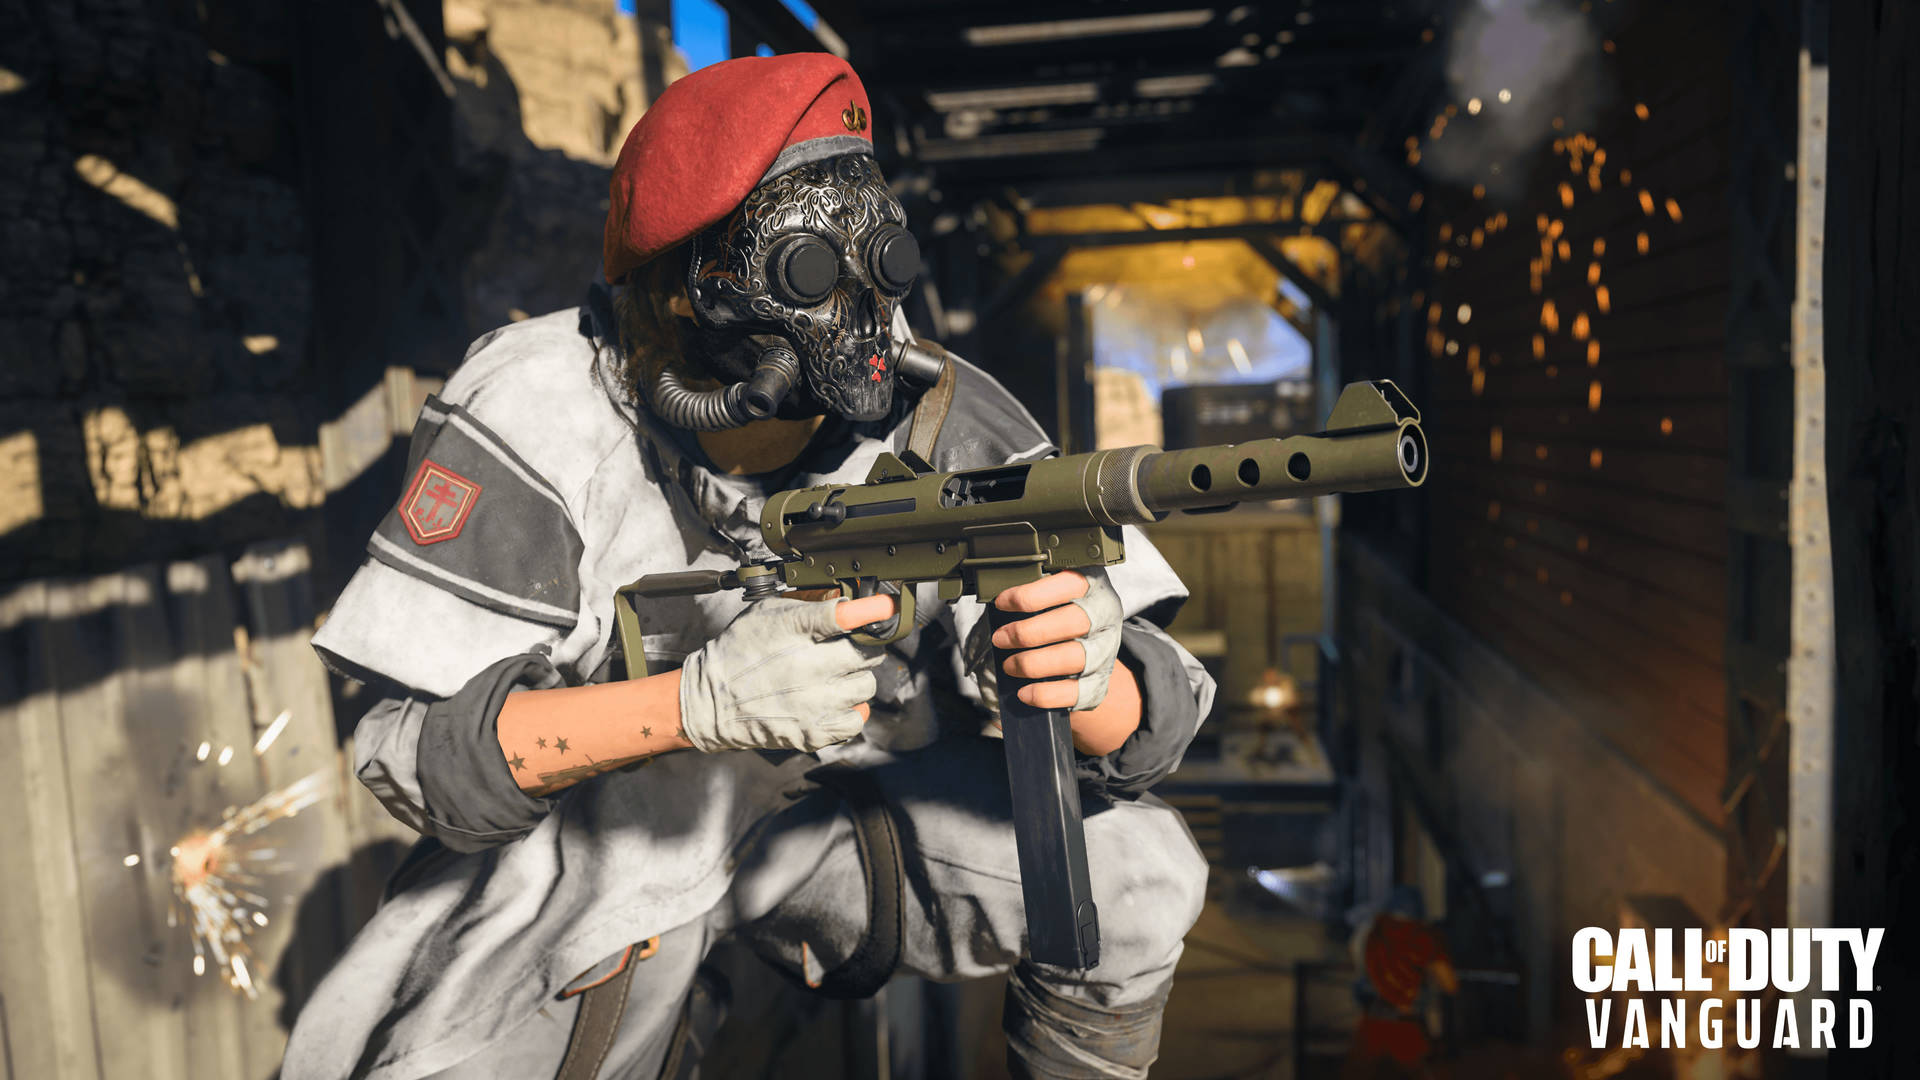 Holdet fra Call of Duty: Vanguard er klar til handling Wallpaper